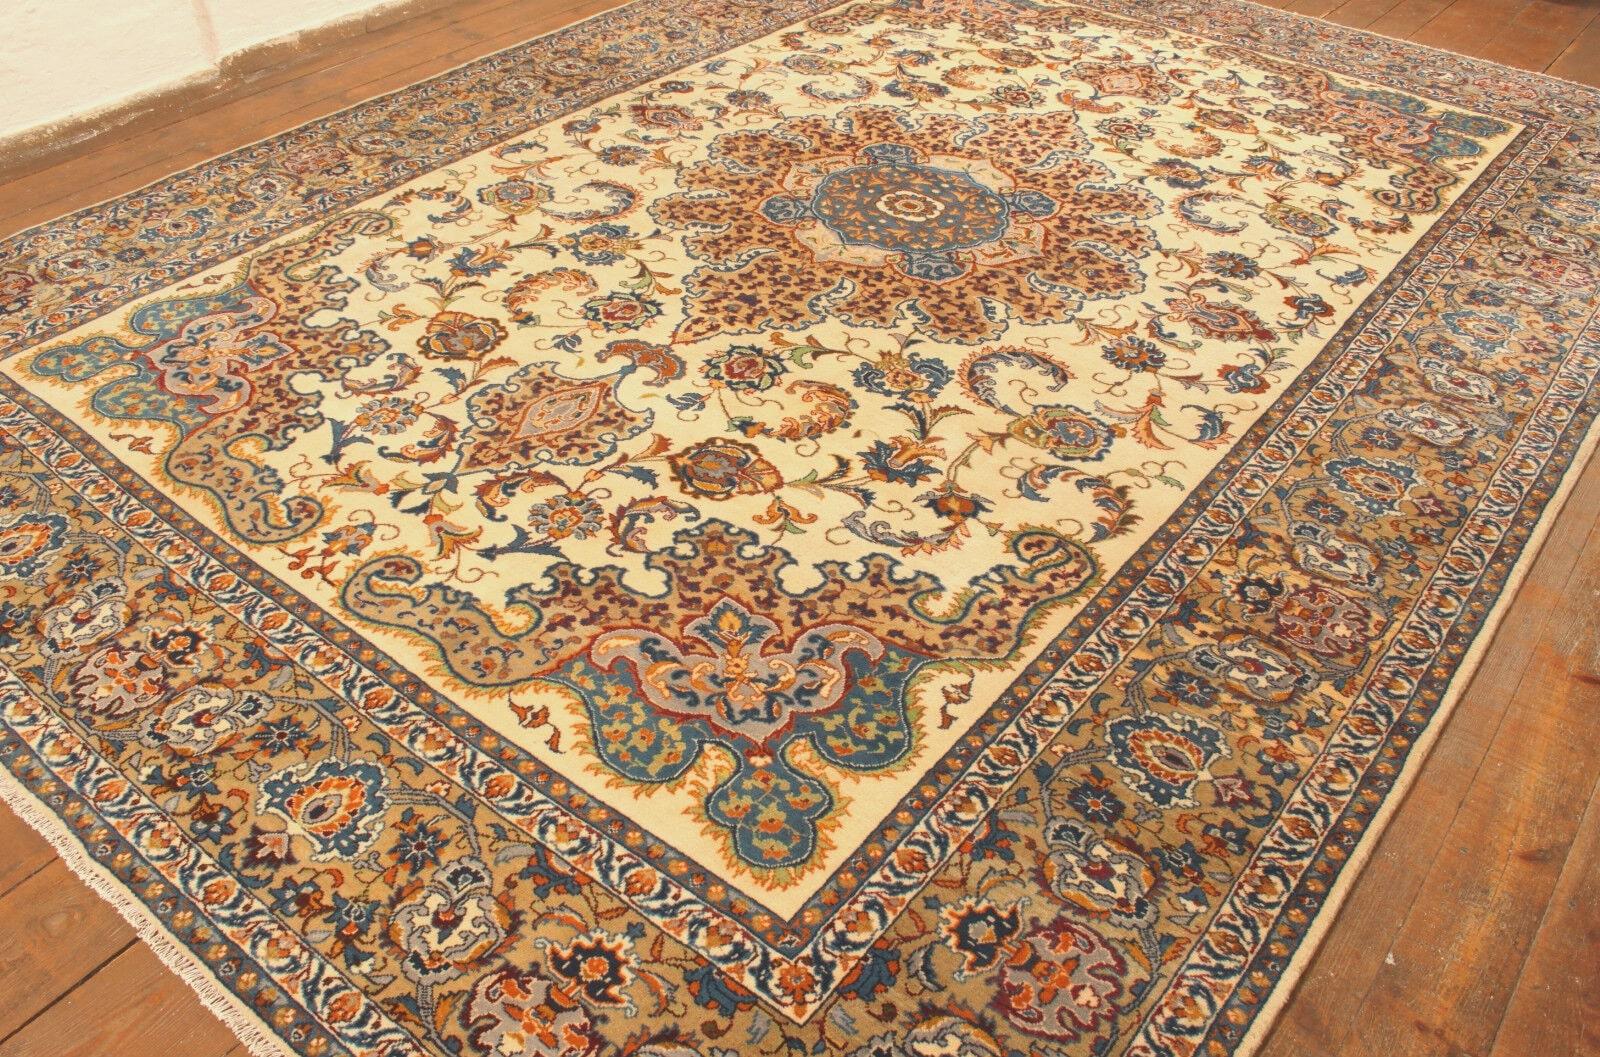 Tapis Vintage Persan Isfahan fait main (303cm x 420cm / 9.9' x 13.7')

Admirez la splendeur de notre tapis vintage persan Isfahan, fait à la main, datant des années 1990. Ce chef-d'œuvre de laine, d'une dimension de 303 cm x 420 cm (9,9' x 13,7'),